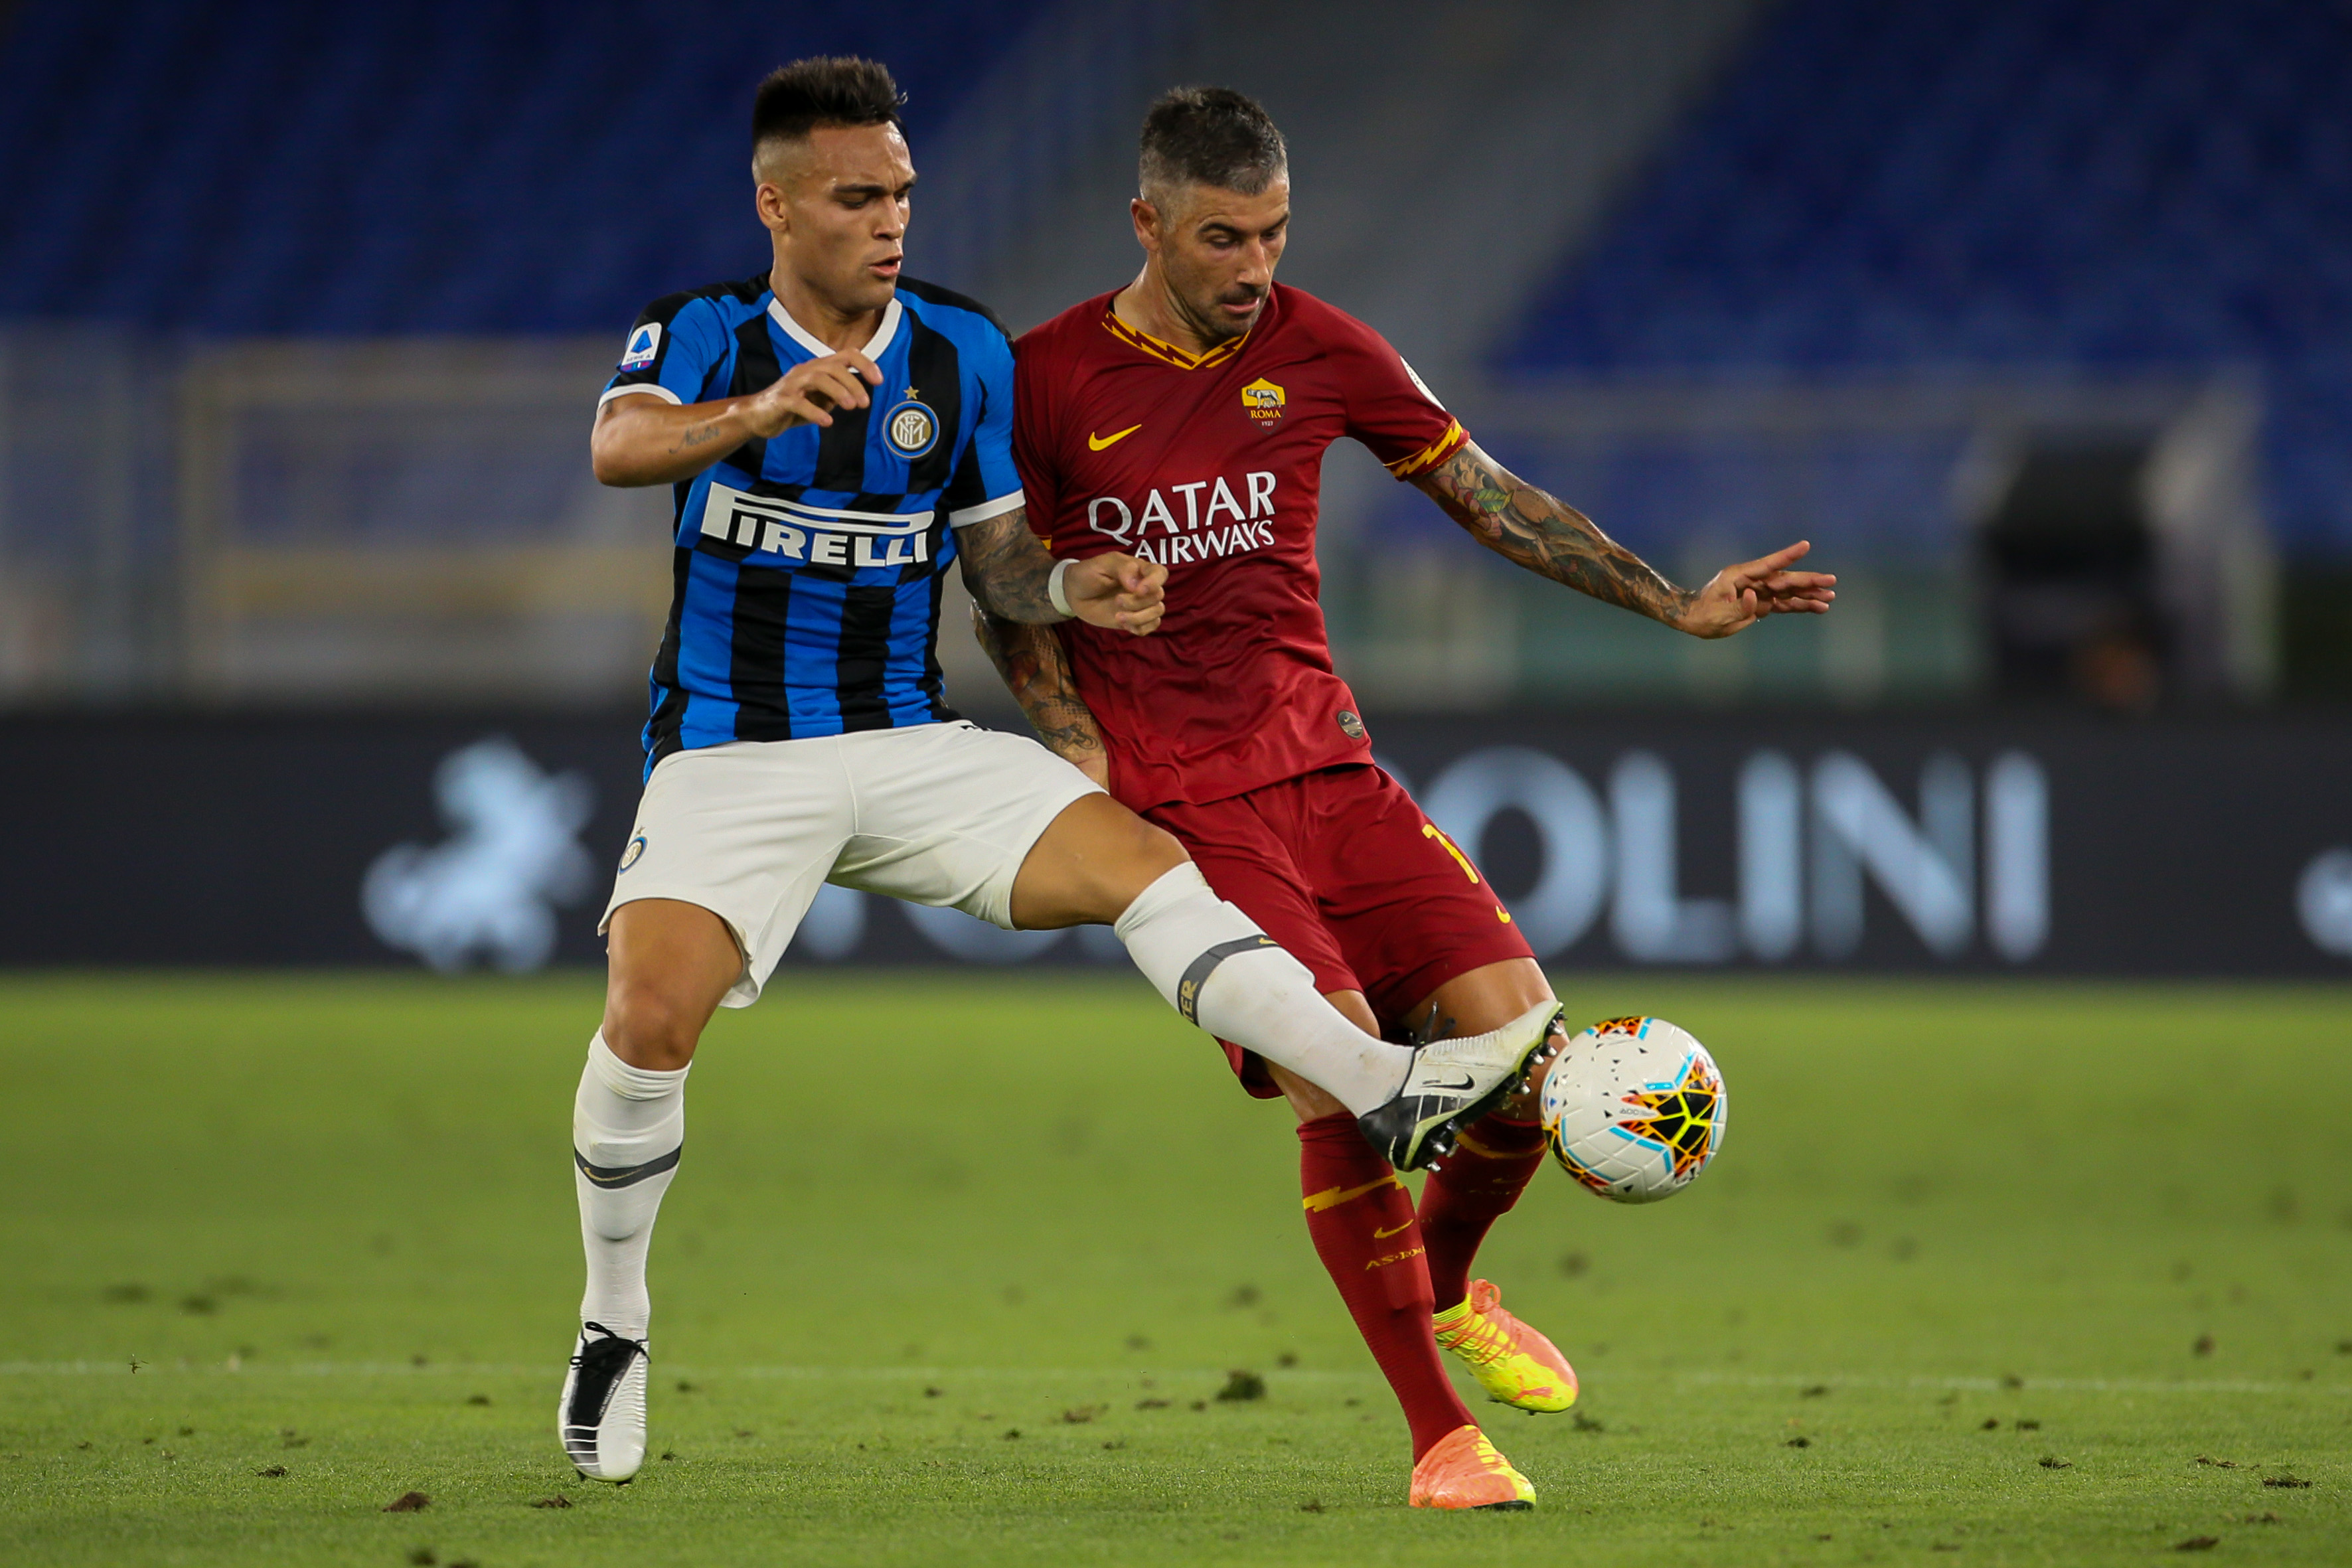 OFICIAL | Inter a anunțat transferul lui Aleksandar Kolarov! Detaliile mutării fotbalistului sârb pe Giuseppe Meazza